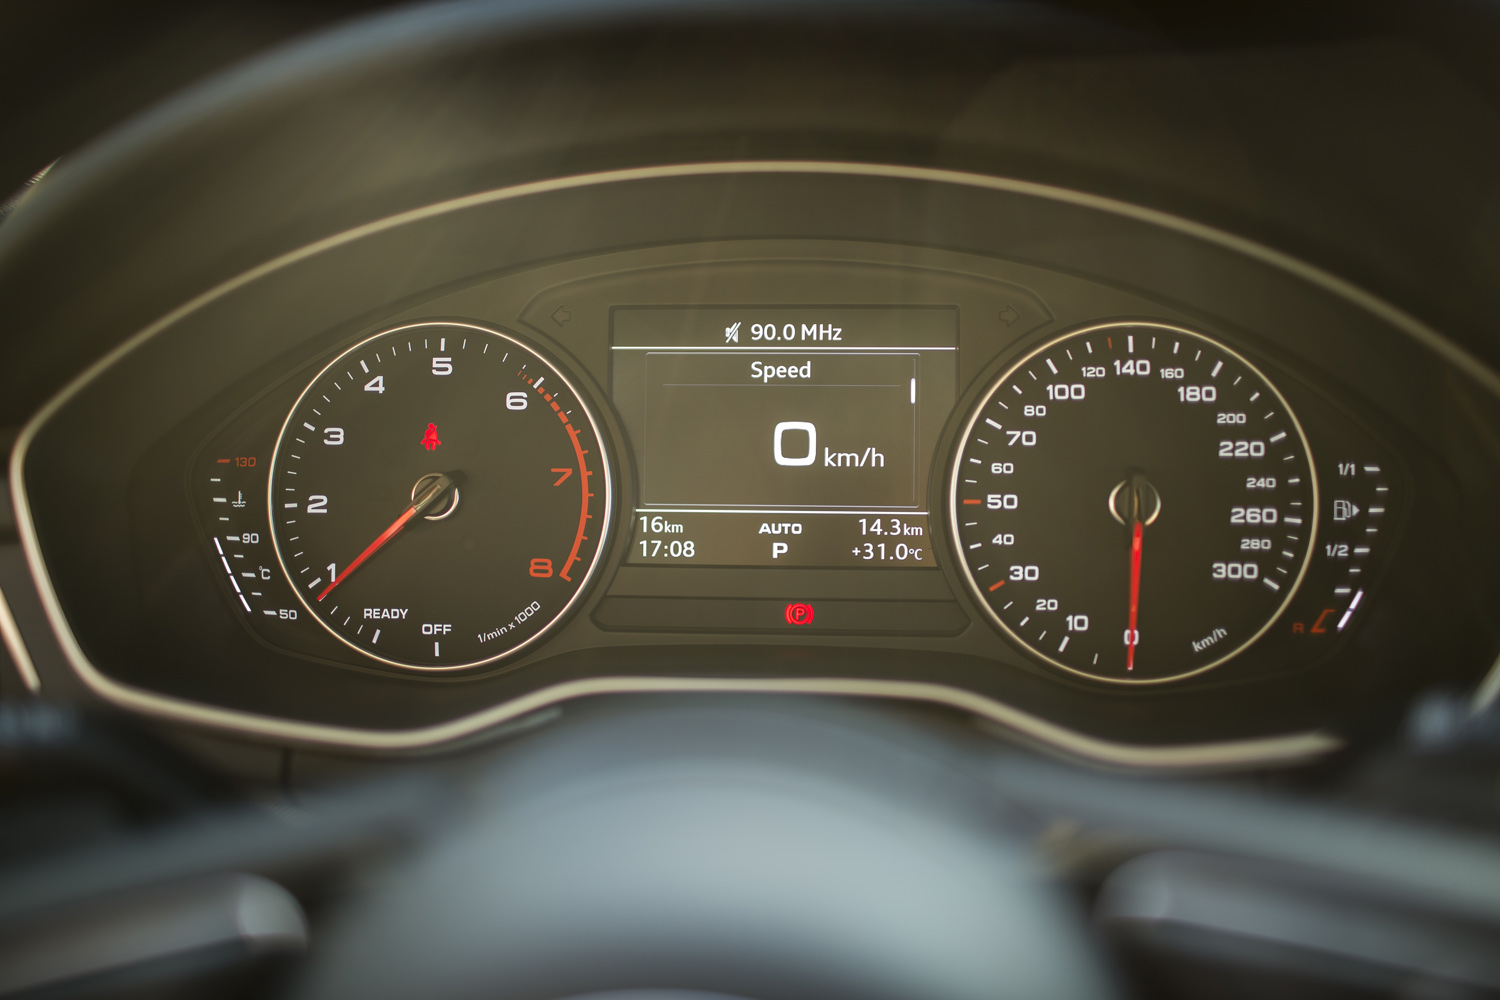 
Đồng hồ hiển thị phía sau vô-lăng Audi A4 thế hệ mới là sự kết hợp giữa 2 đồng hồ cơ báo vòng tua và tốc độ cùng một màn hinh điện tử hiển thị thông tin tổng hợp.
